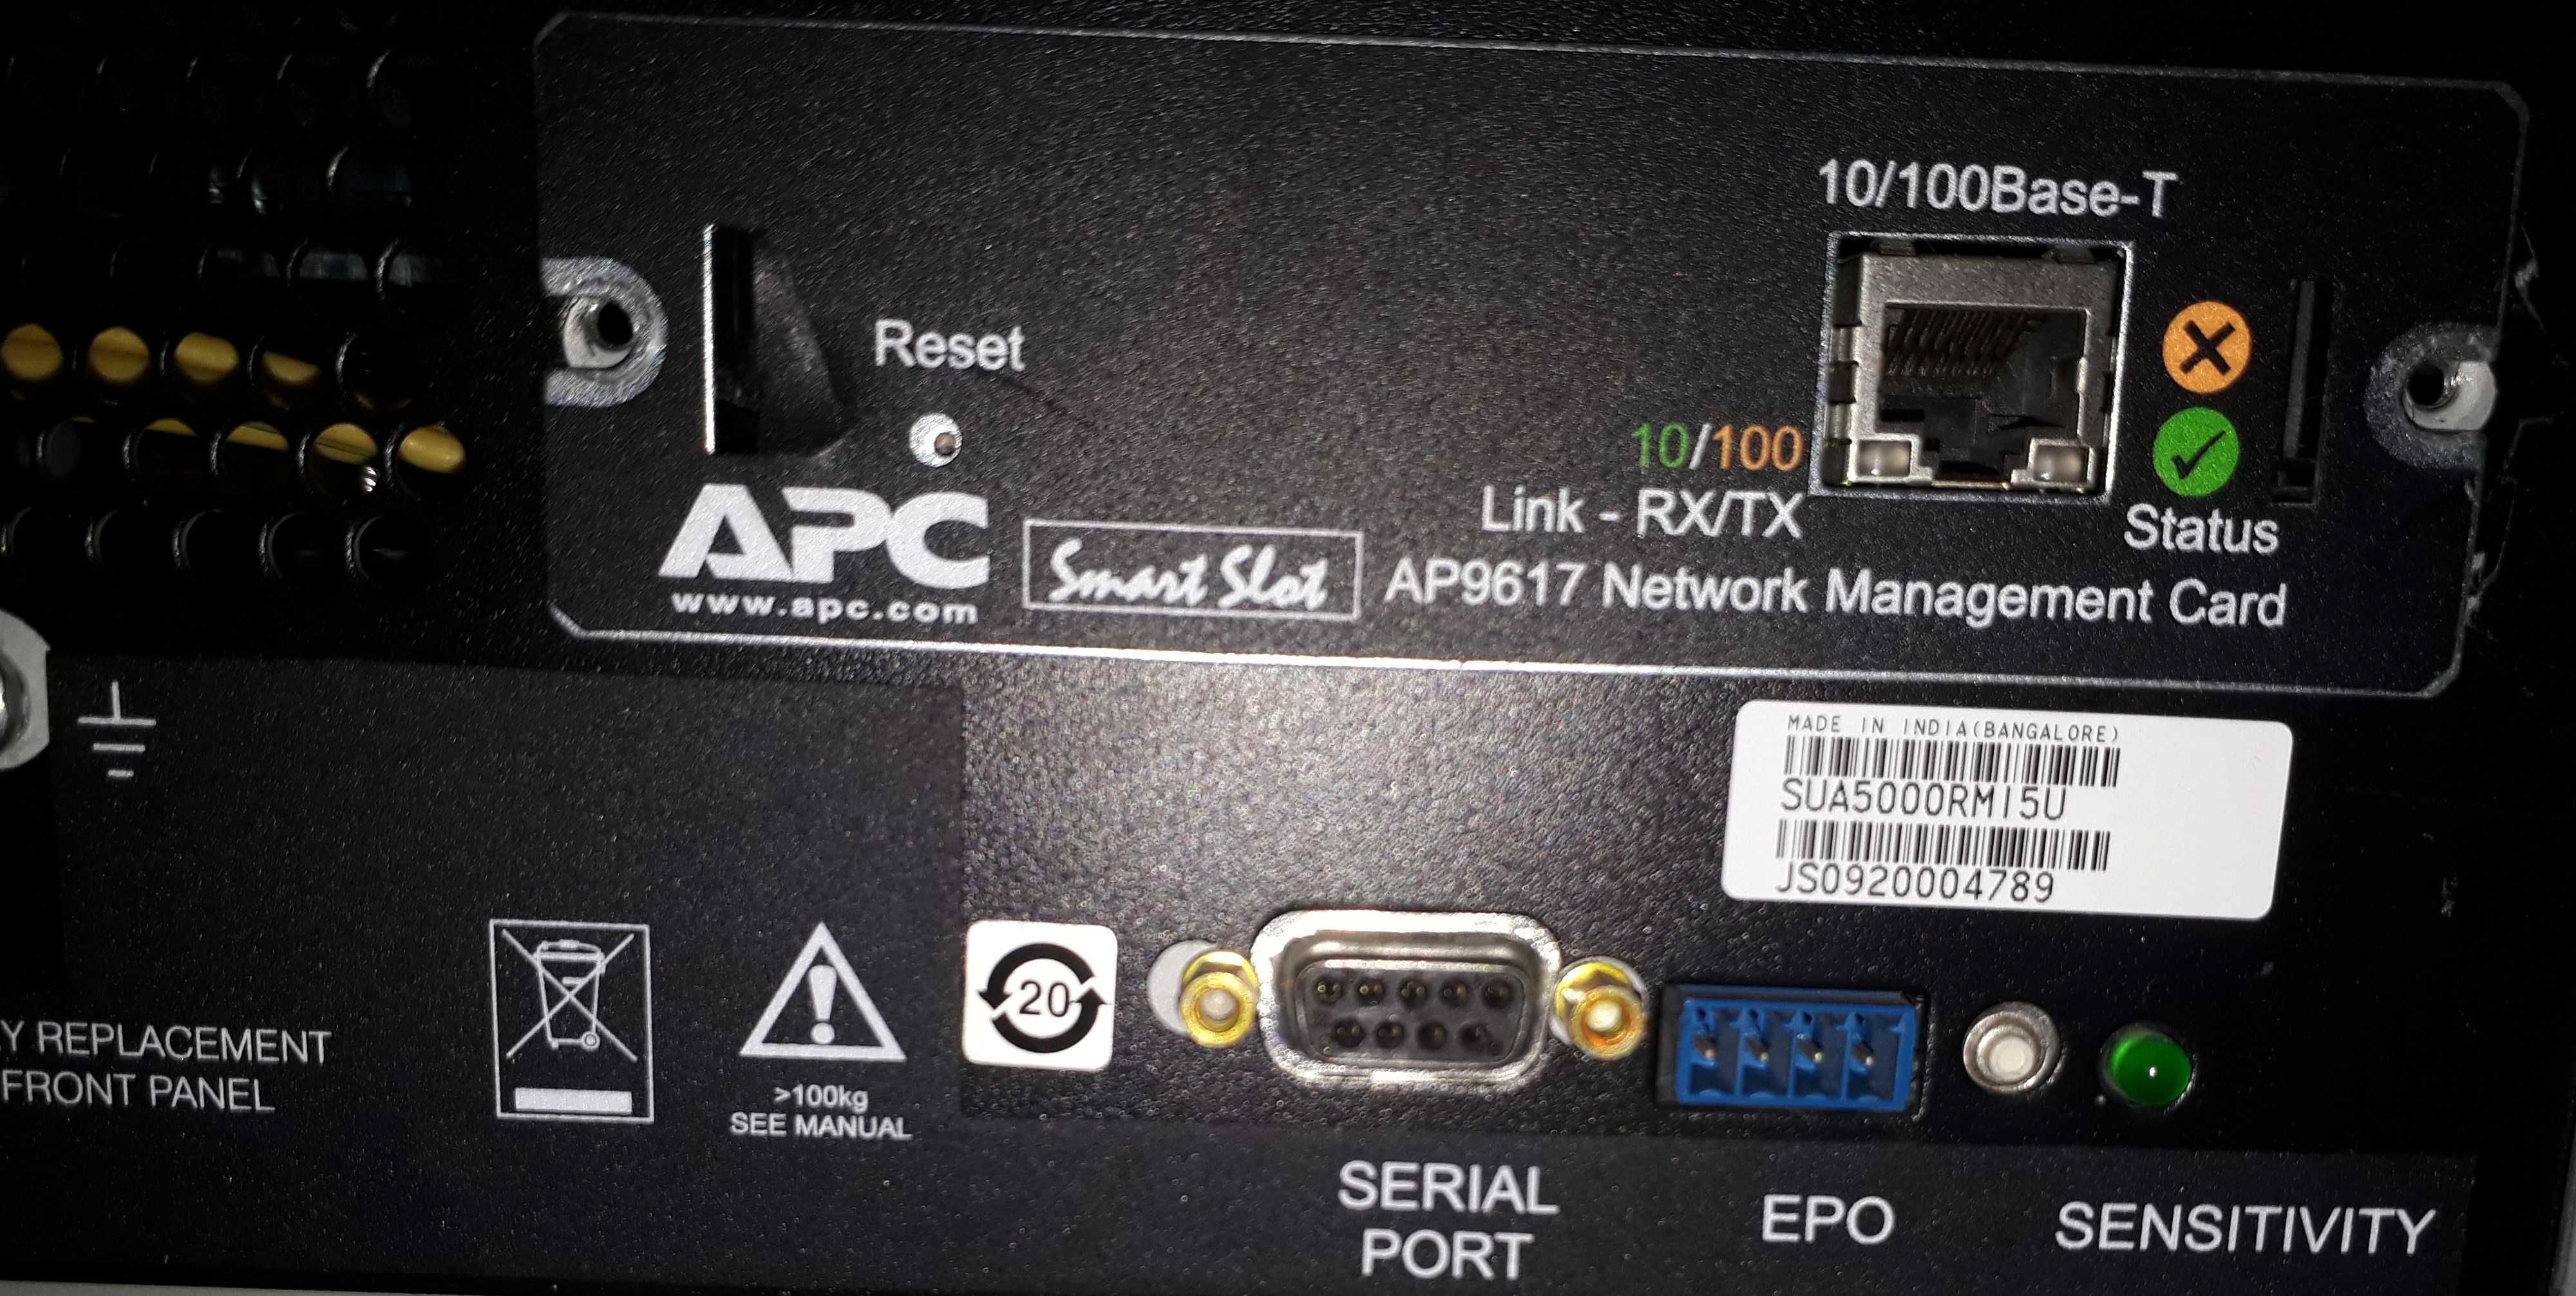 ДБЖ APC Smart-UPS 5000  (чиста синусоіда)   - в наявності 2 шт.